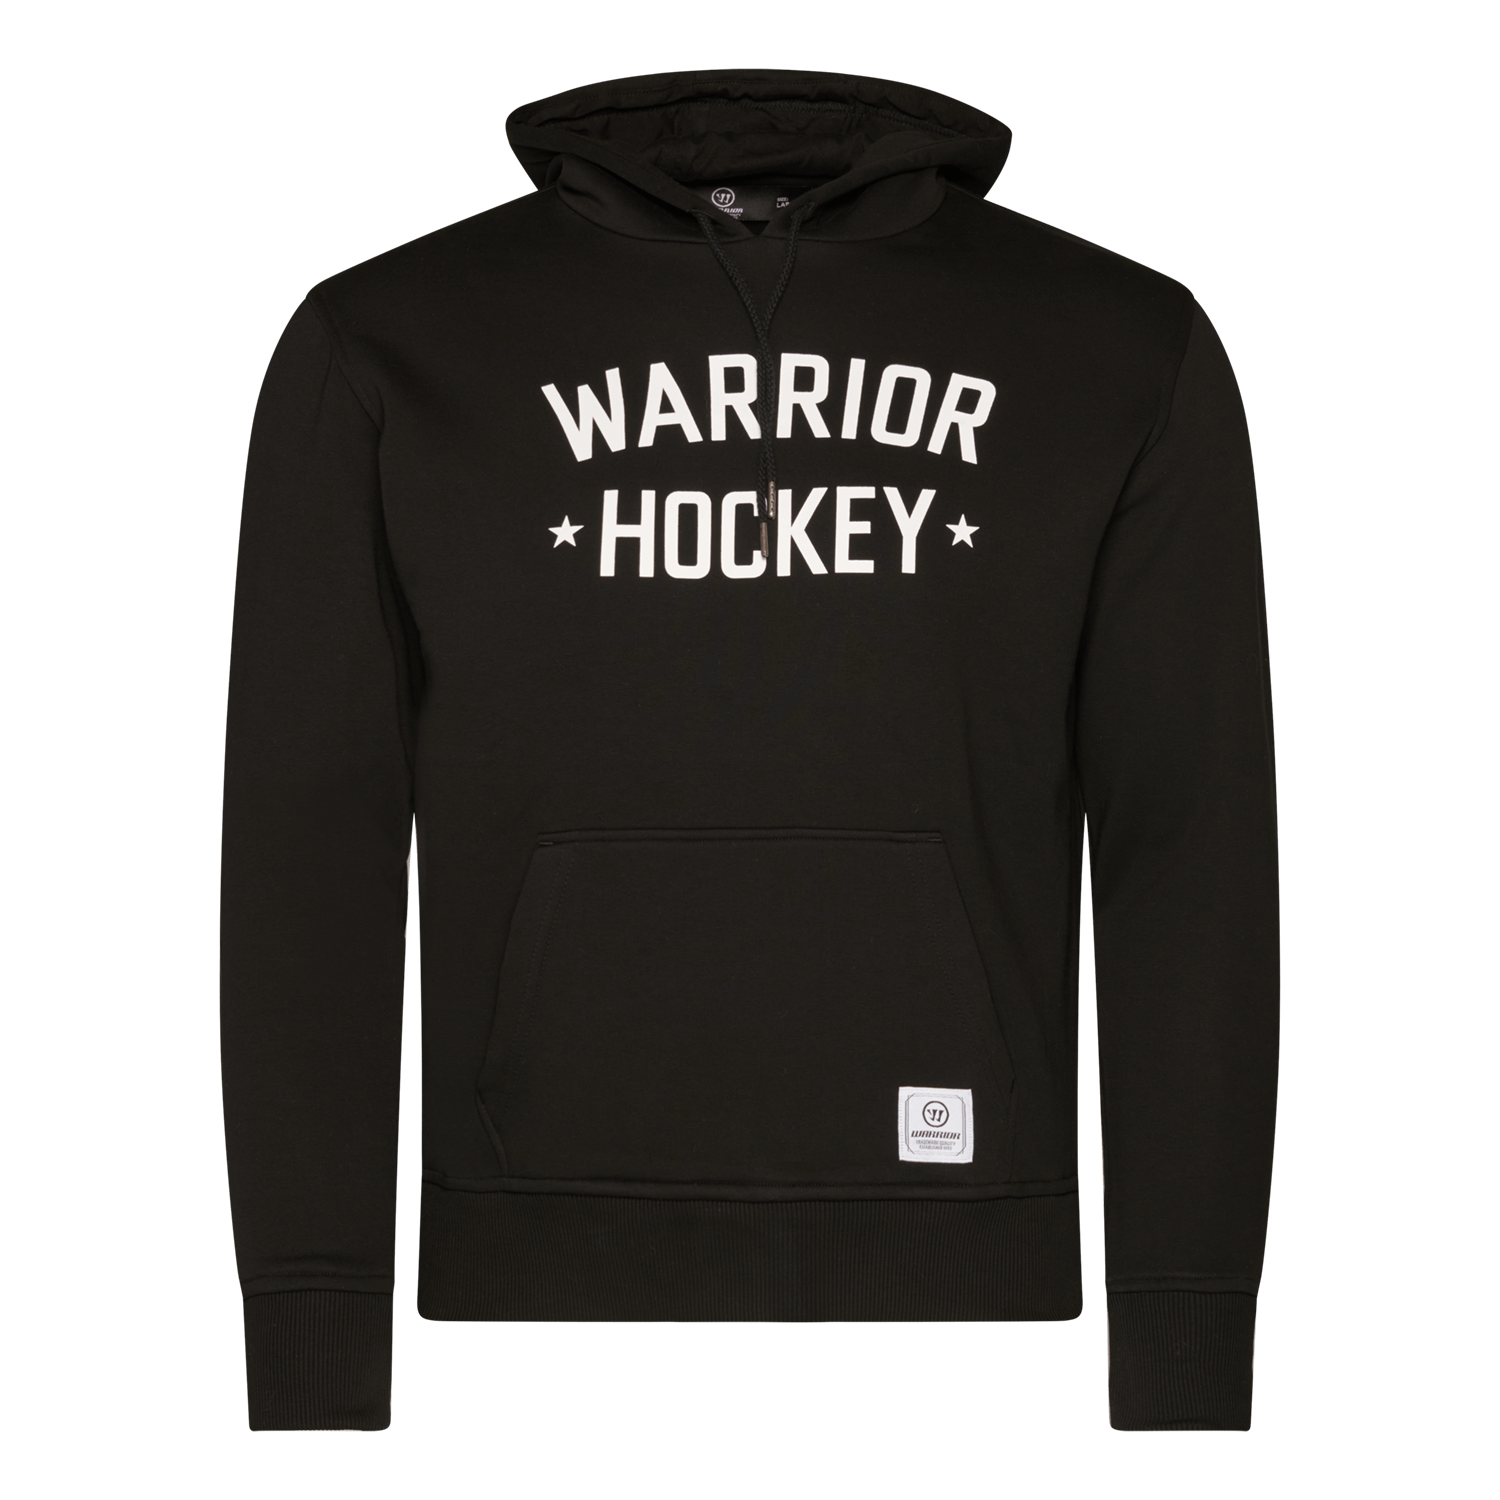 Zuschauer könnte sein Wunsch warrior hockey sweatshirt Instandhaltung ...